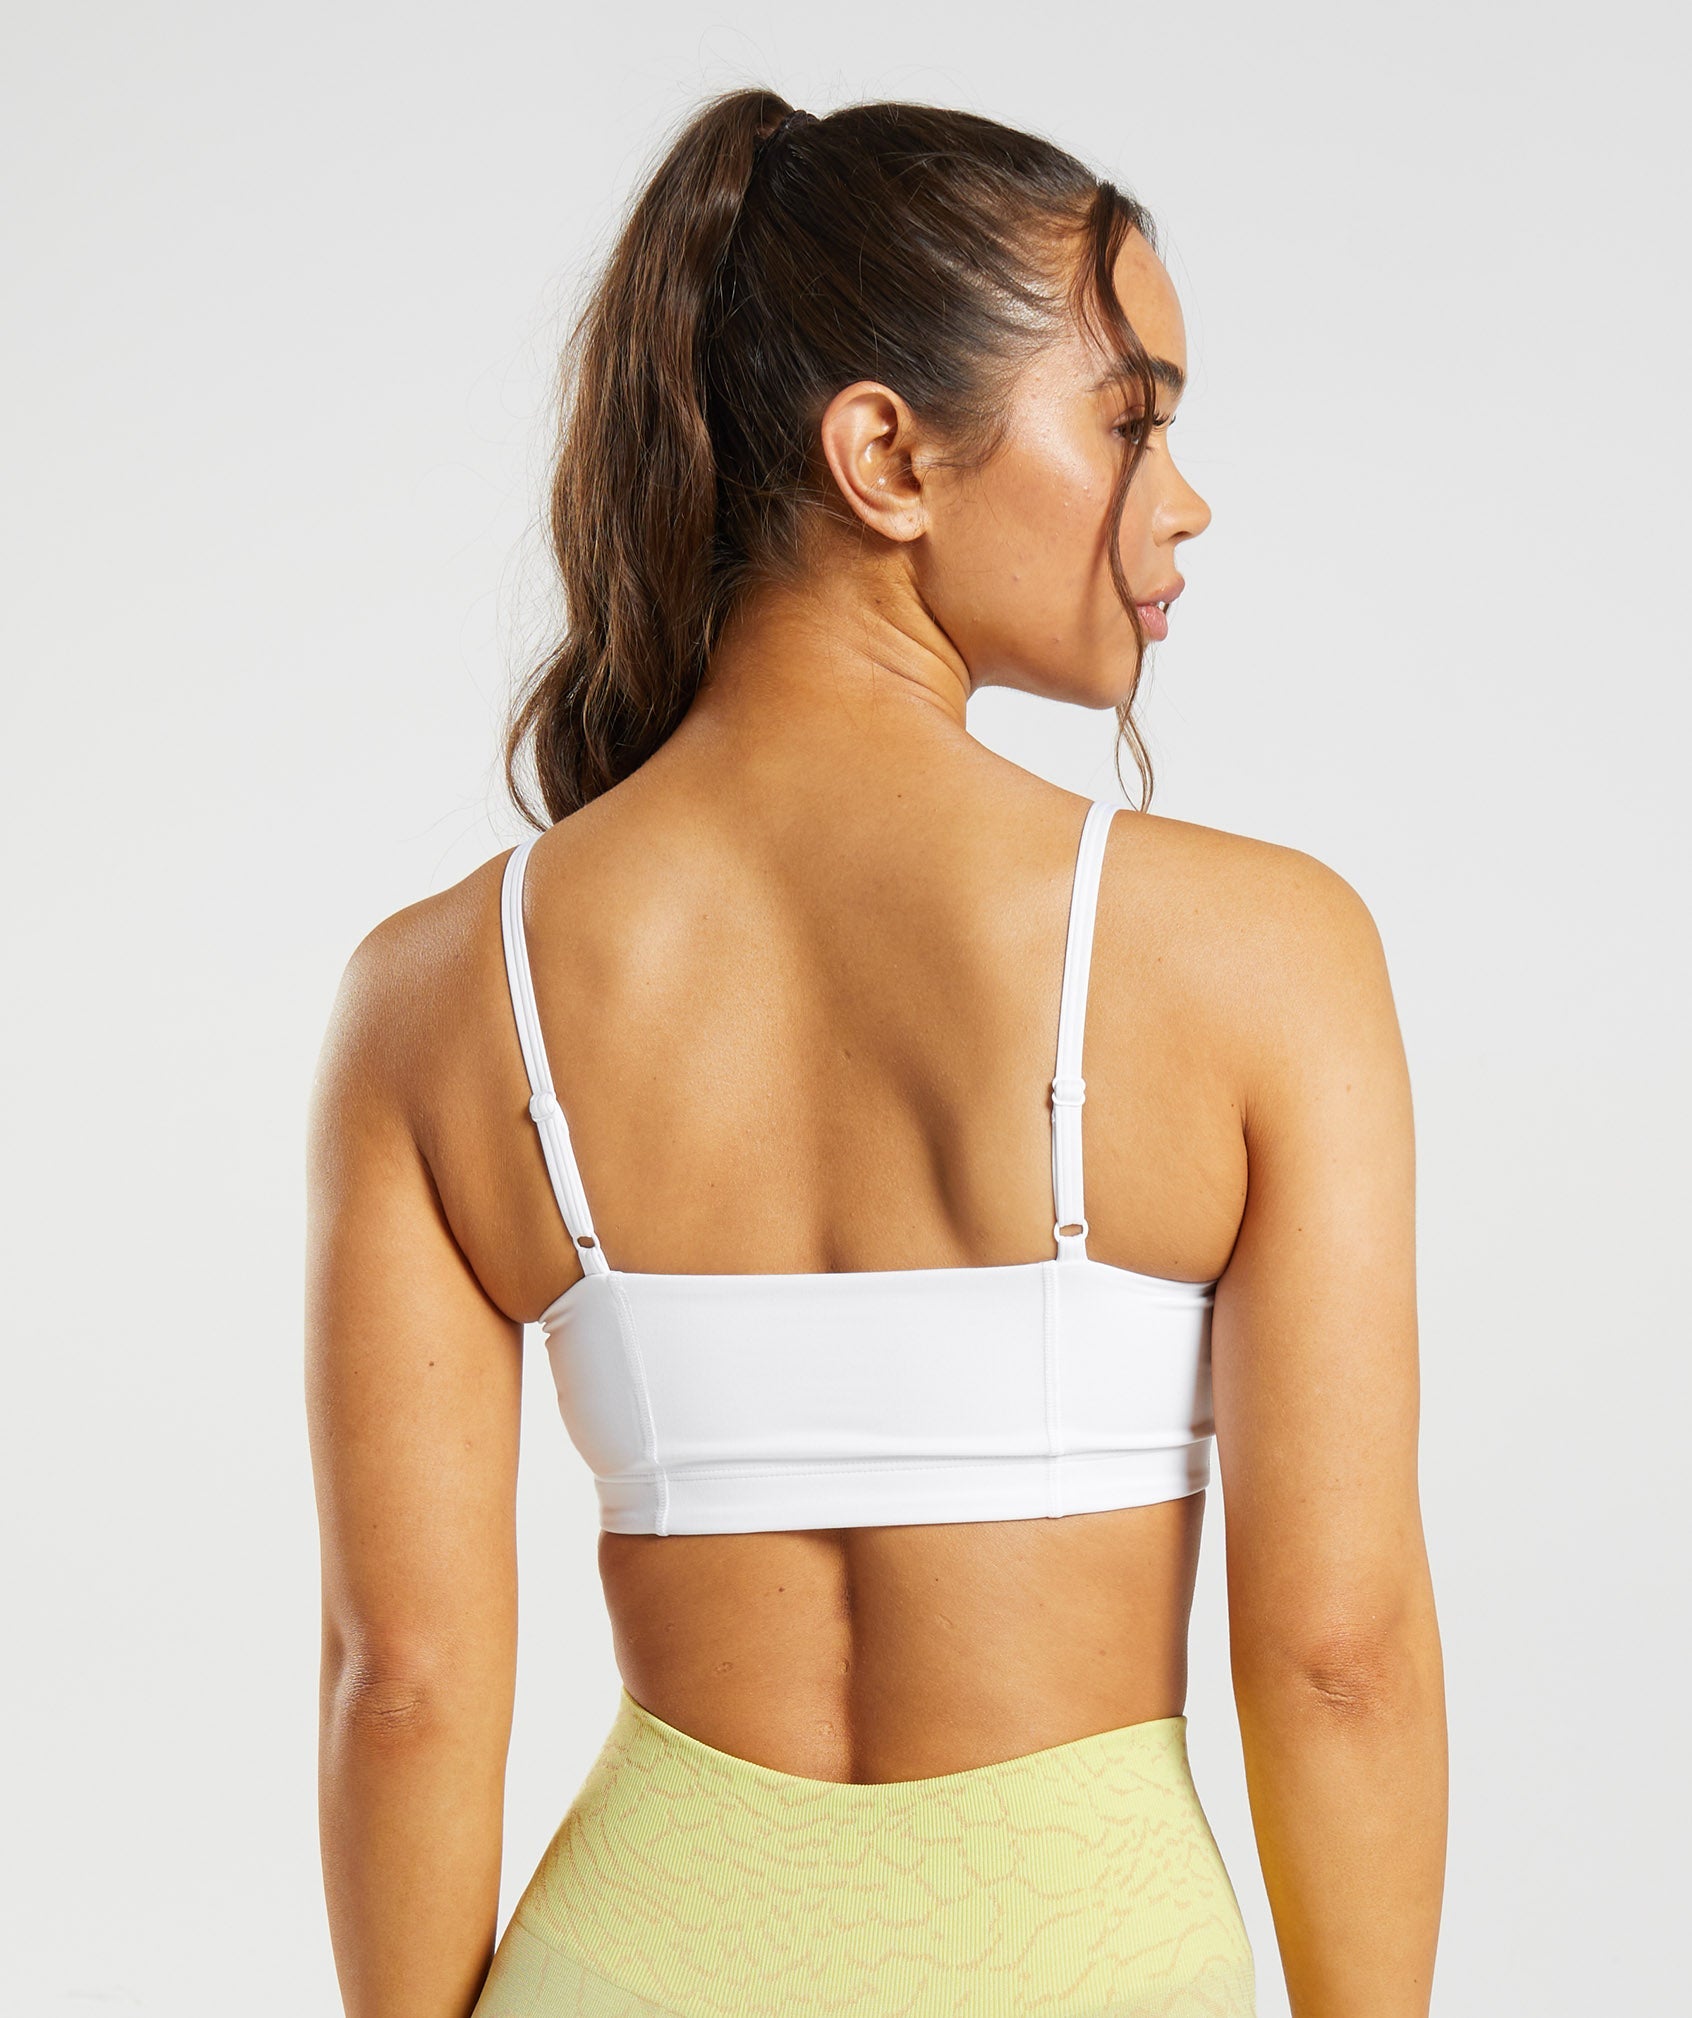 Nueboo Tape Bras Gem B M White Sports Bra Vest Wireless Bralettes Stuck Bra  Women Crop Tops Silicone Enhancer Top Up W : : Fashion